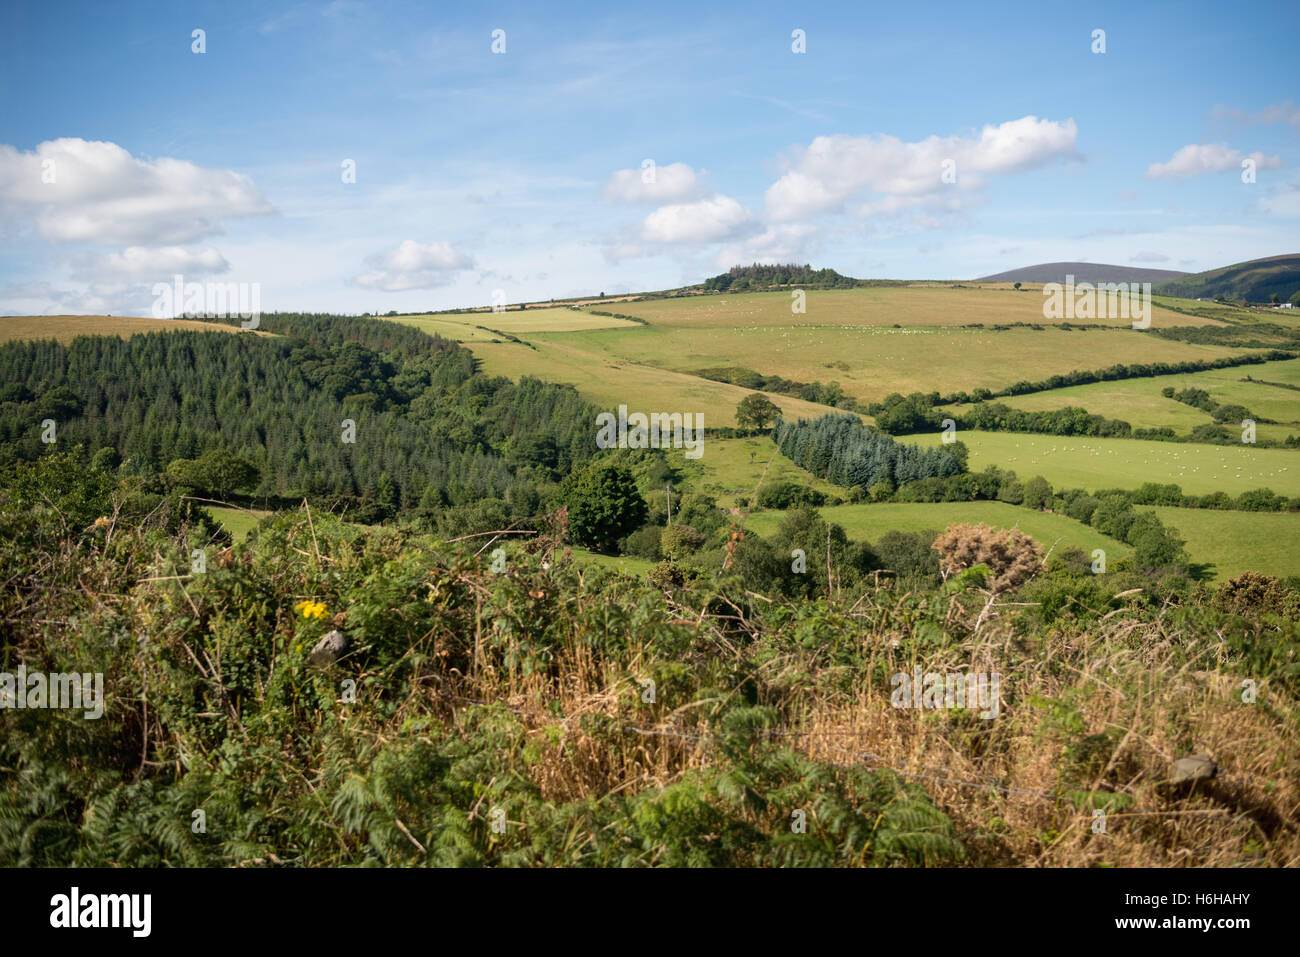 La campagne vallonnée, avec des champs des paysans en République d'Irlande. La campagne environnante est luxuriante et verte. Banque D'Images